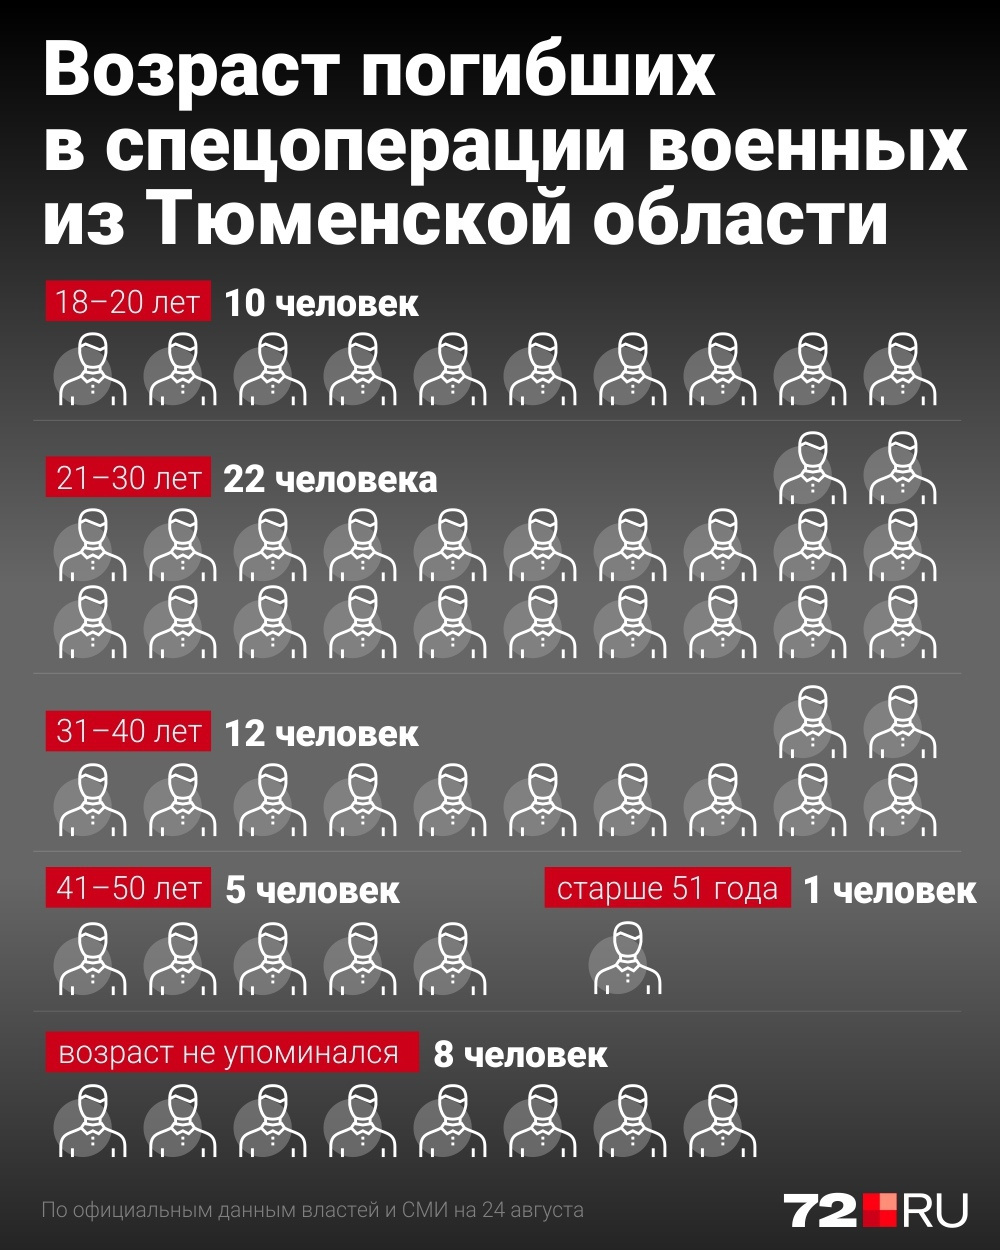 Сколько погибших россиян на украине официально. Статистика жертв и потерь спецоперации. Военная группа сколько человек. Гибель по годам статистика.